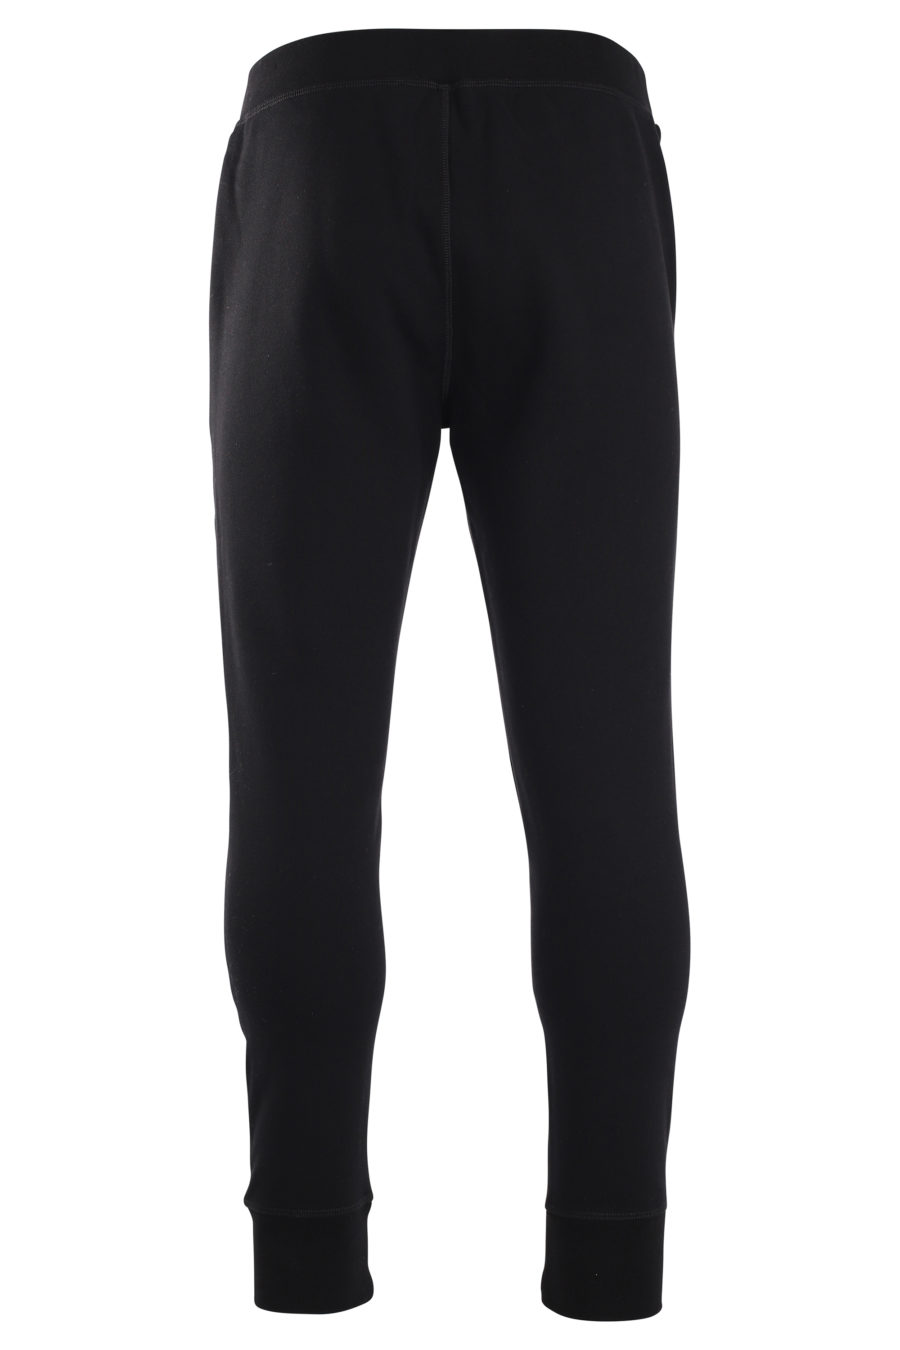 Pantalón de chándal negro con logo"icon splash" vertical - IMG 0018